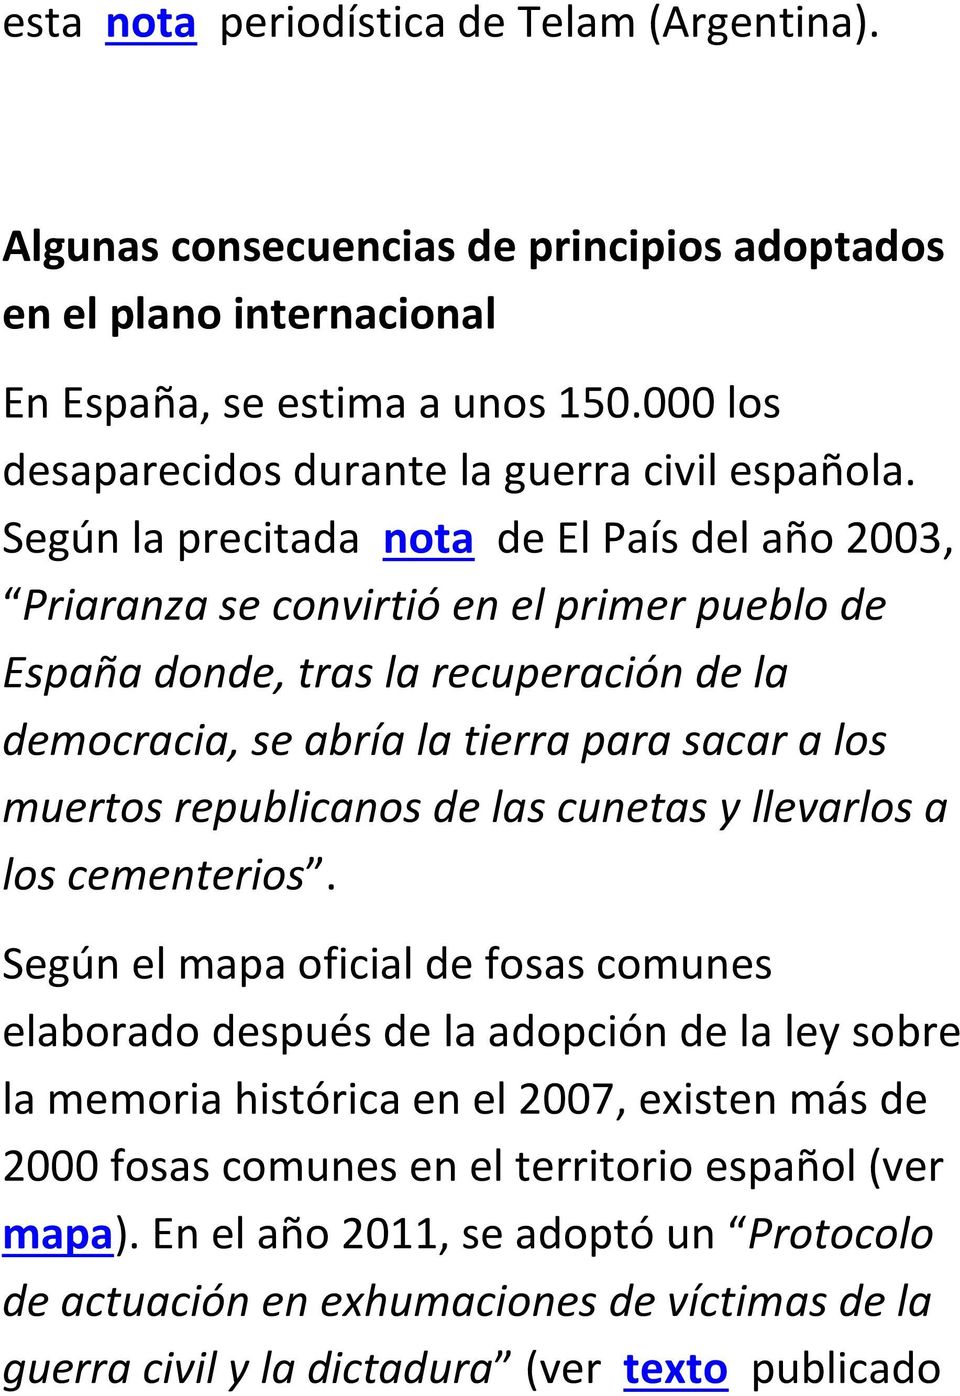 Según la precitada nota de El País del año 2003, Priaranza se convirtió en el primer pueblo de España donde, tras la recuperación de la democracia, se abría la tierra para sacar a los muertos